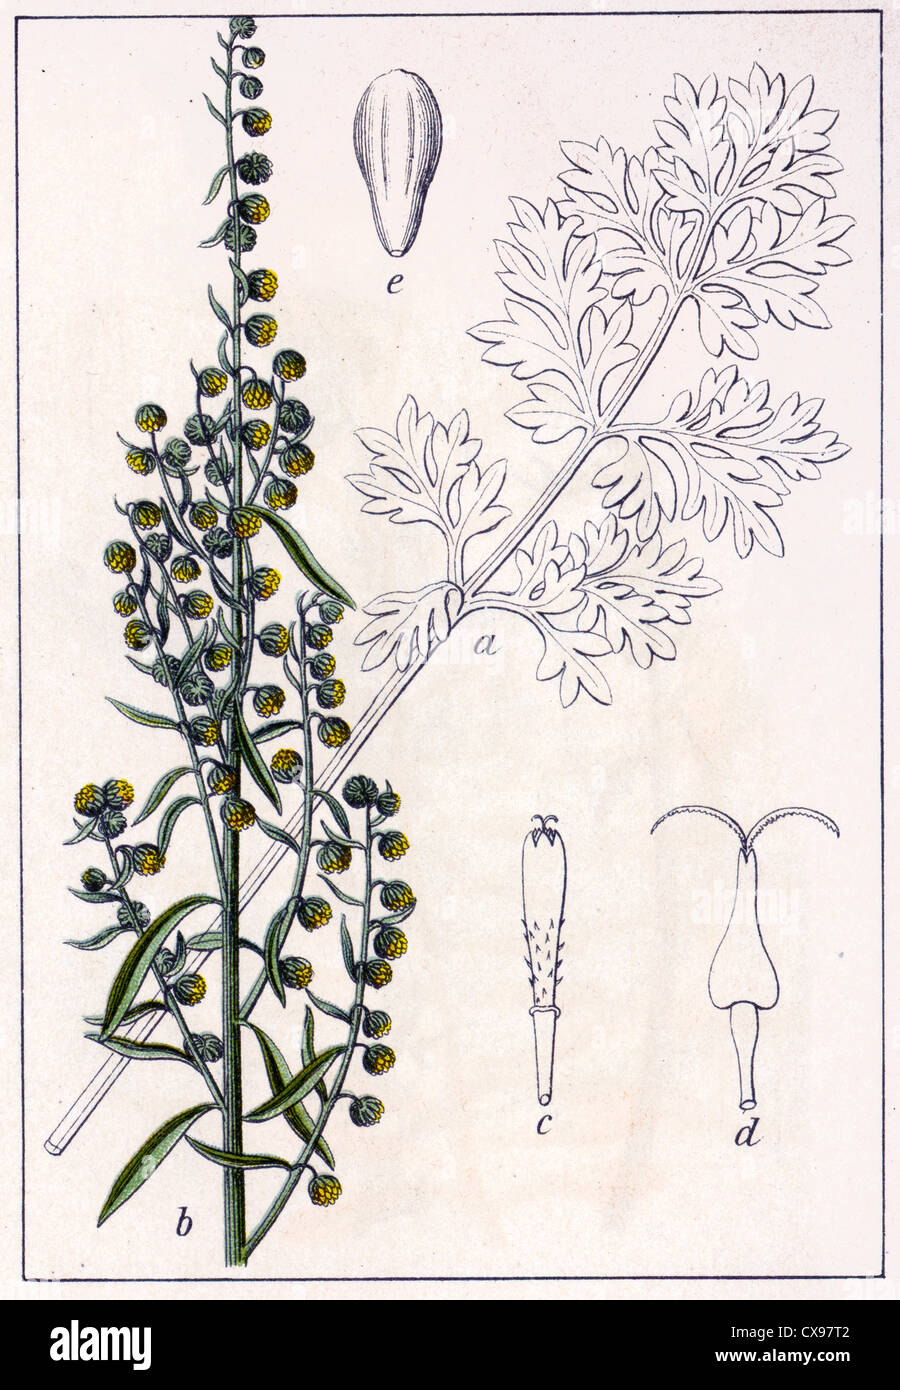 Artemisia absinthium Stock Photo